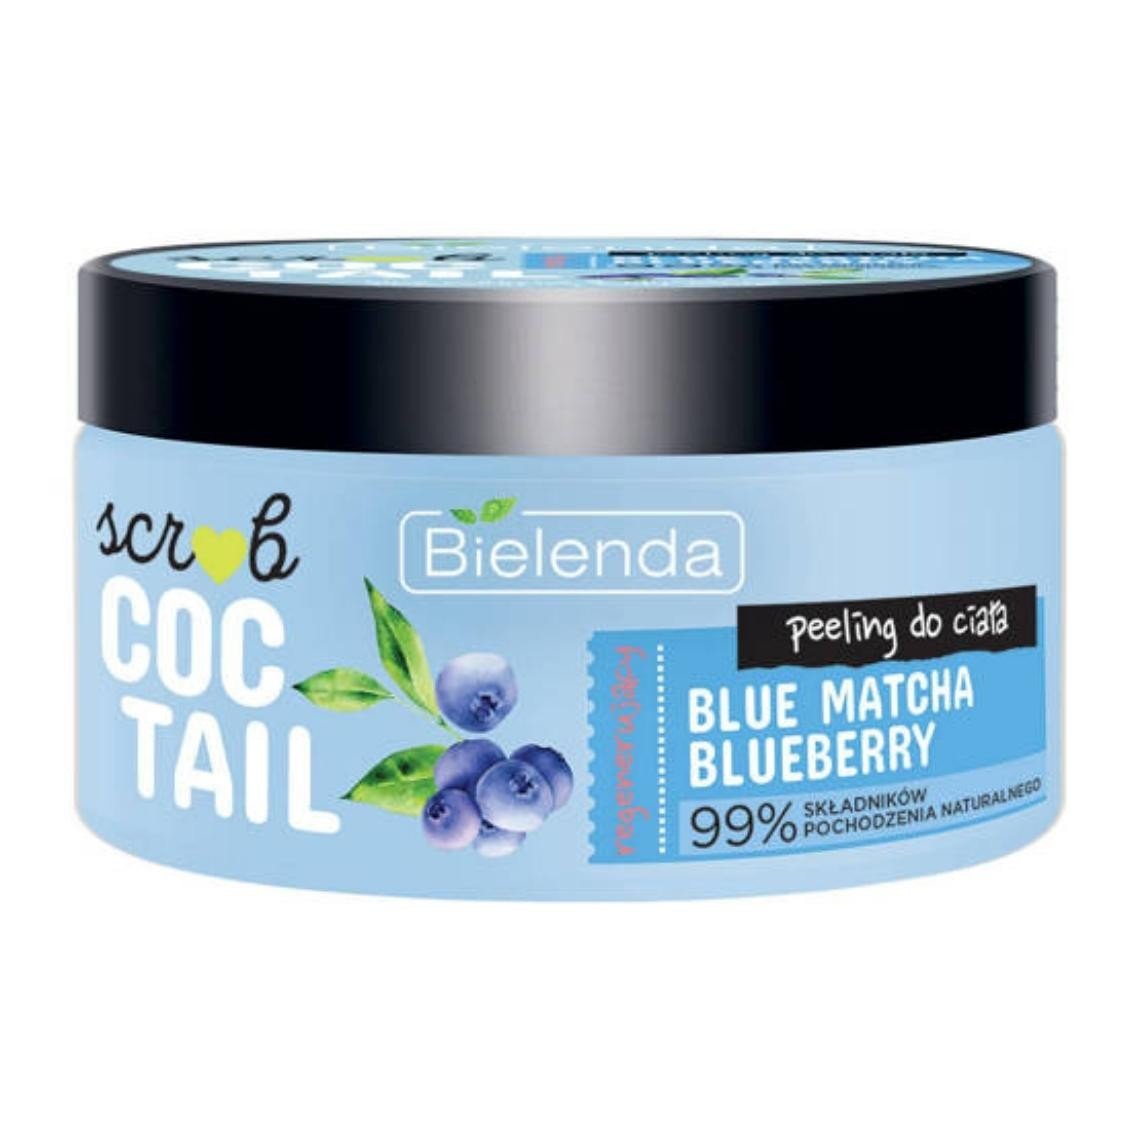 Bielenda Scrub Coctail regenerujący peeling do ciała blue matcha blueberry 350 g